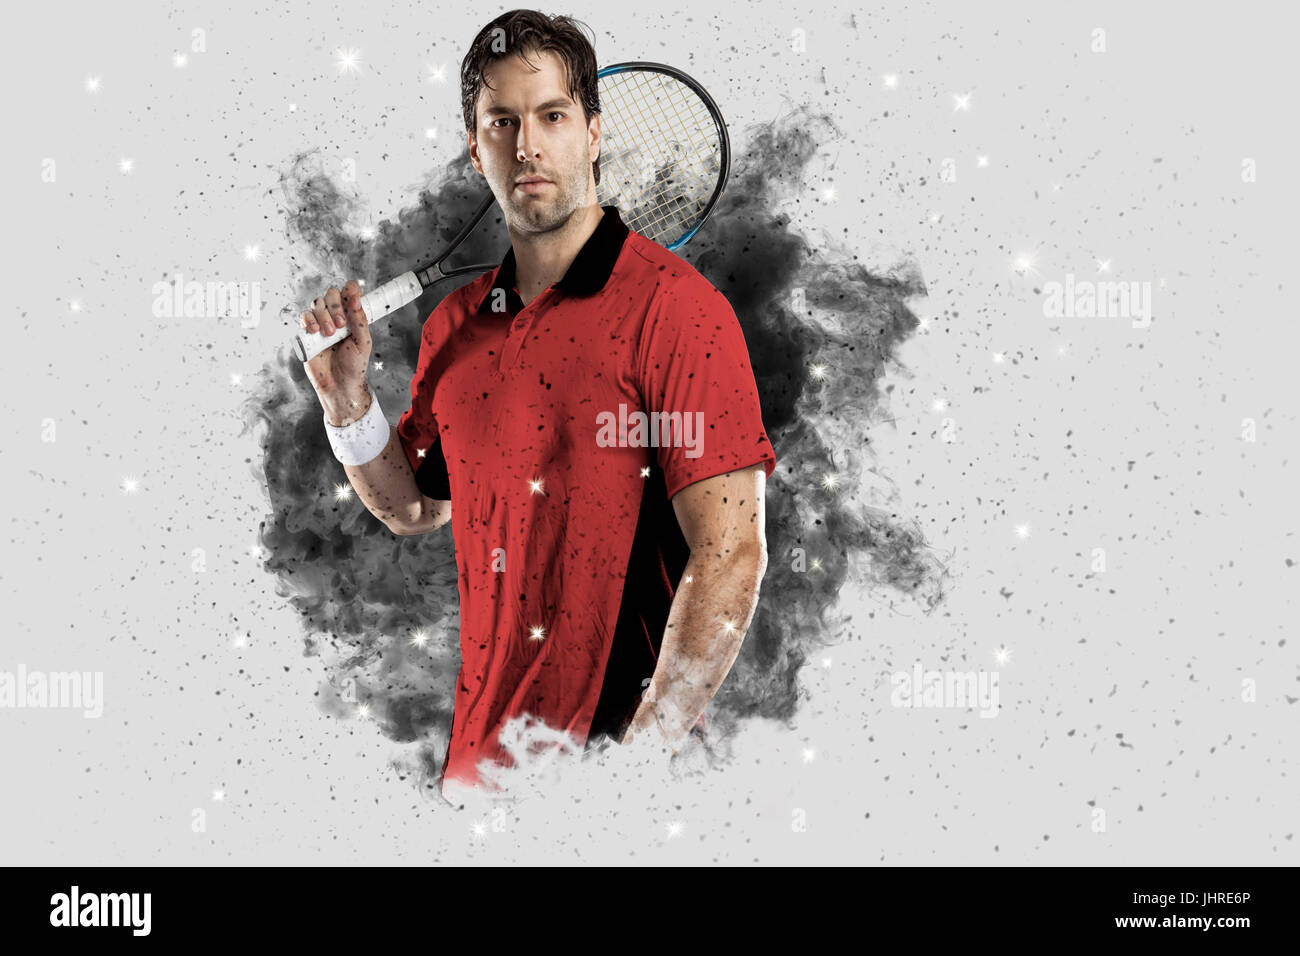 Joueur de tennis avec un uniforme rouge qui sort d'une explosion de fumée . Banque D'Images